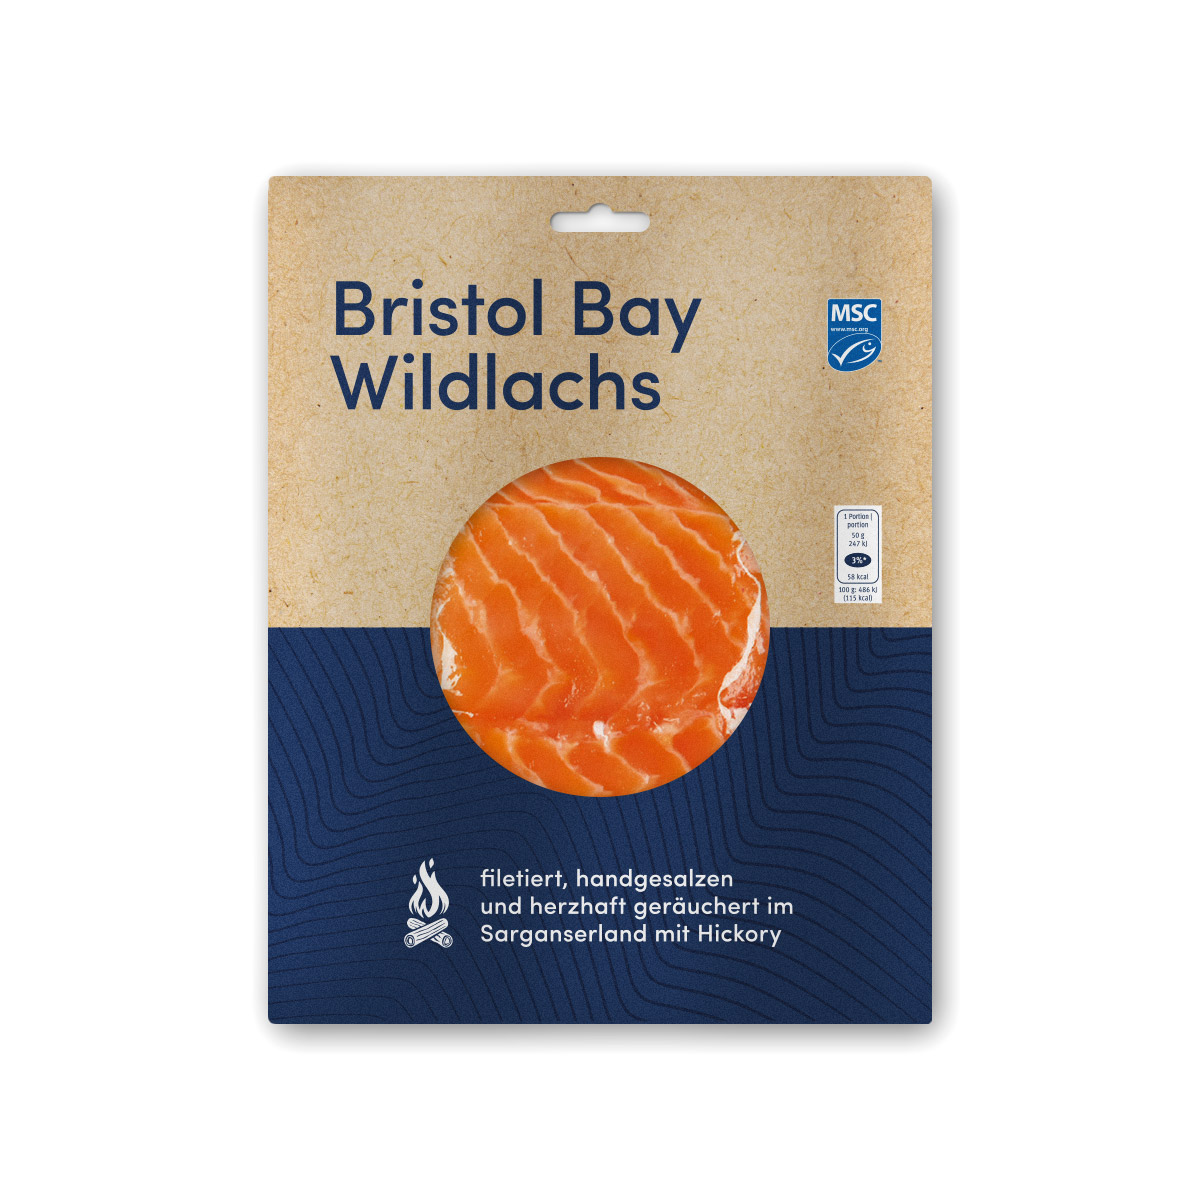 Migros MSC Bristol Bay Wildlachs Verpackungsdesign.